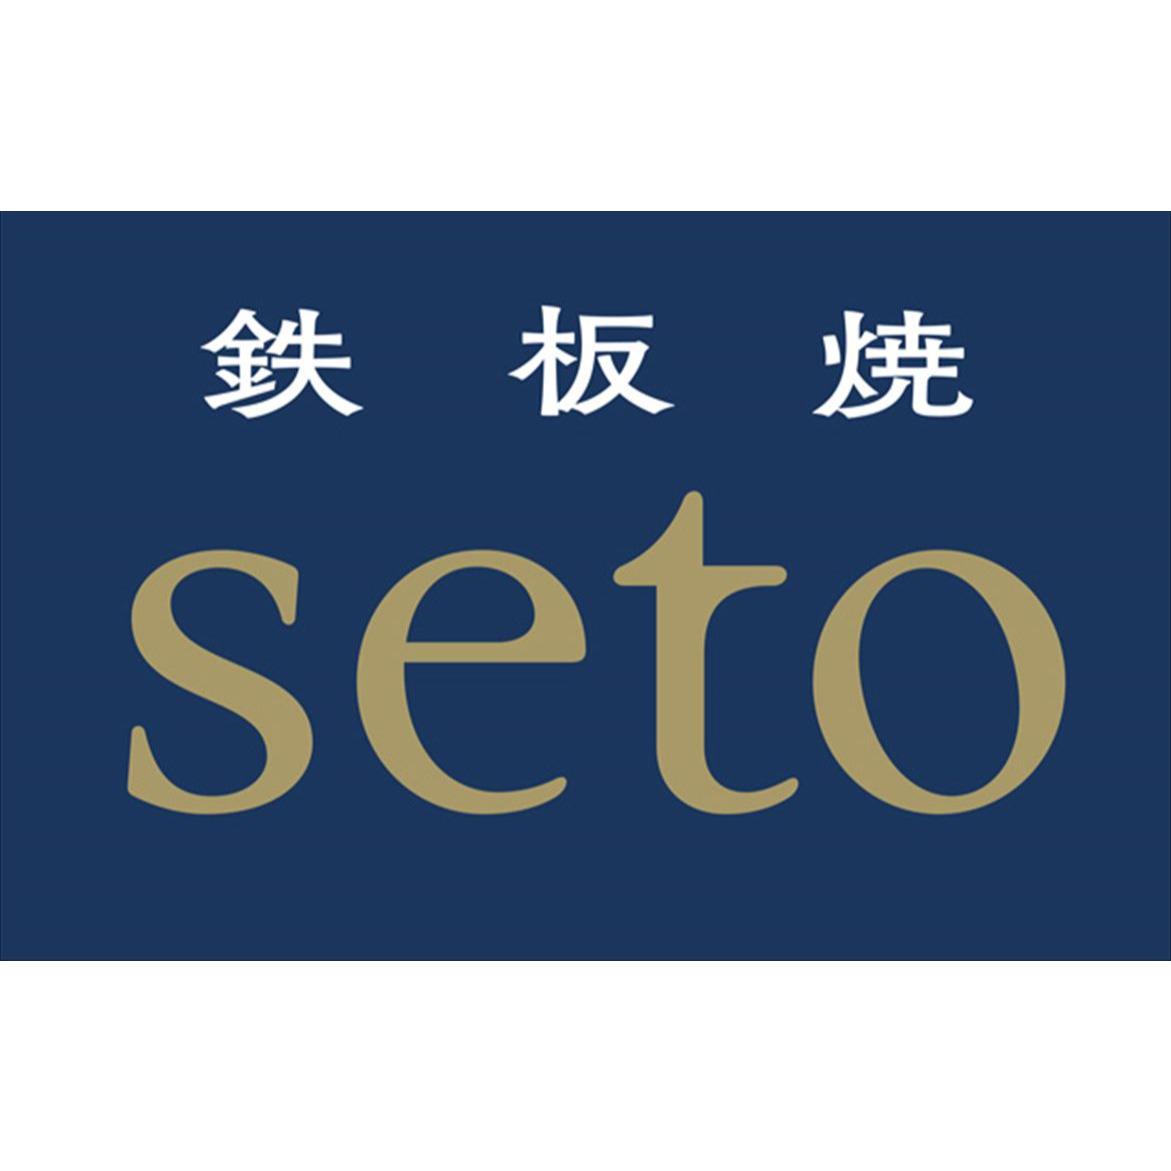 鉄板焼seto Logo